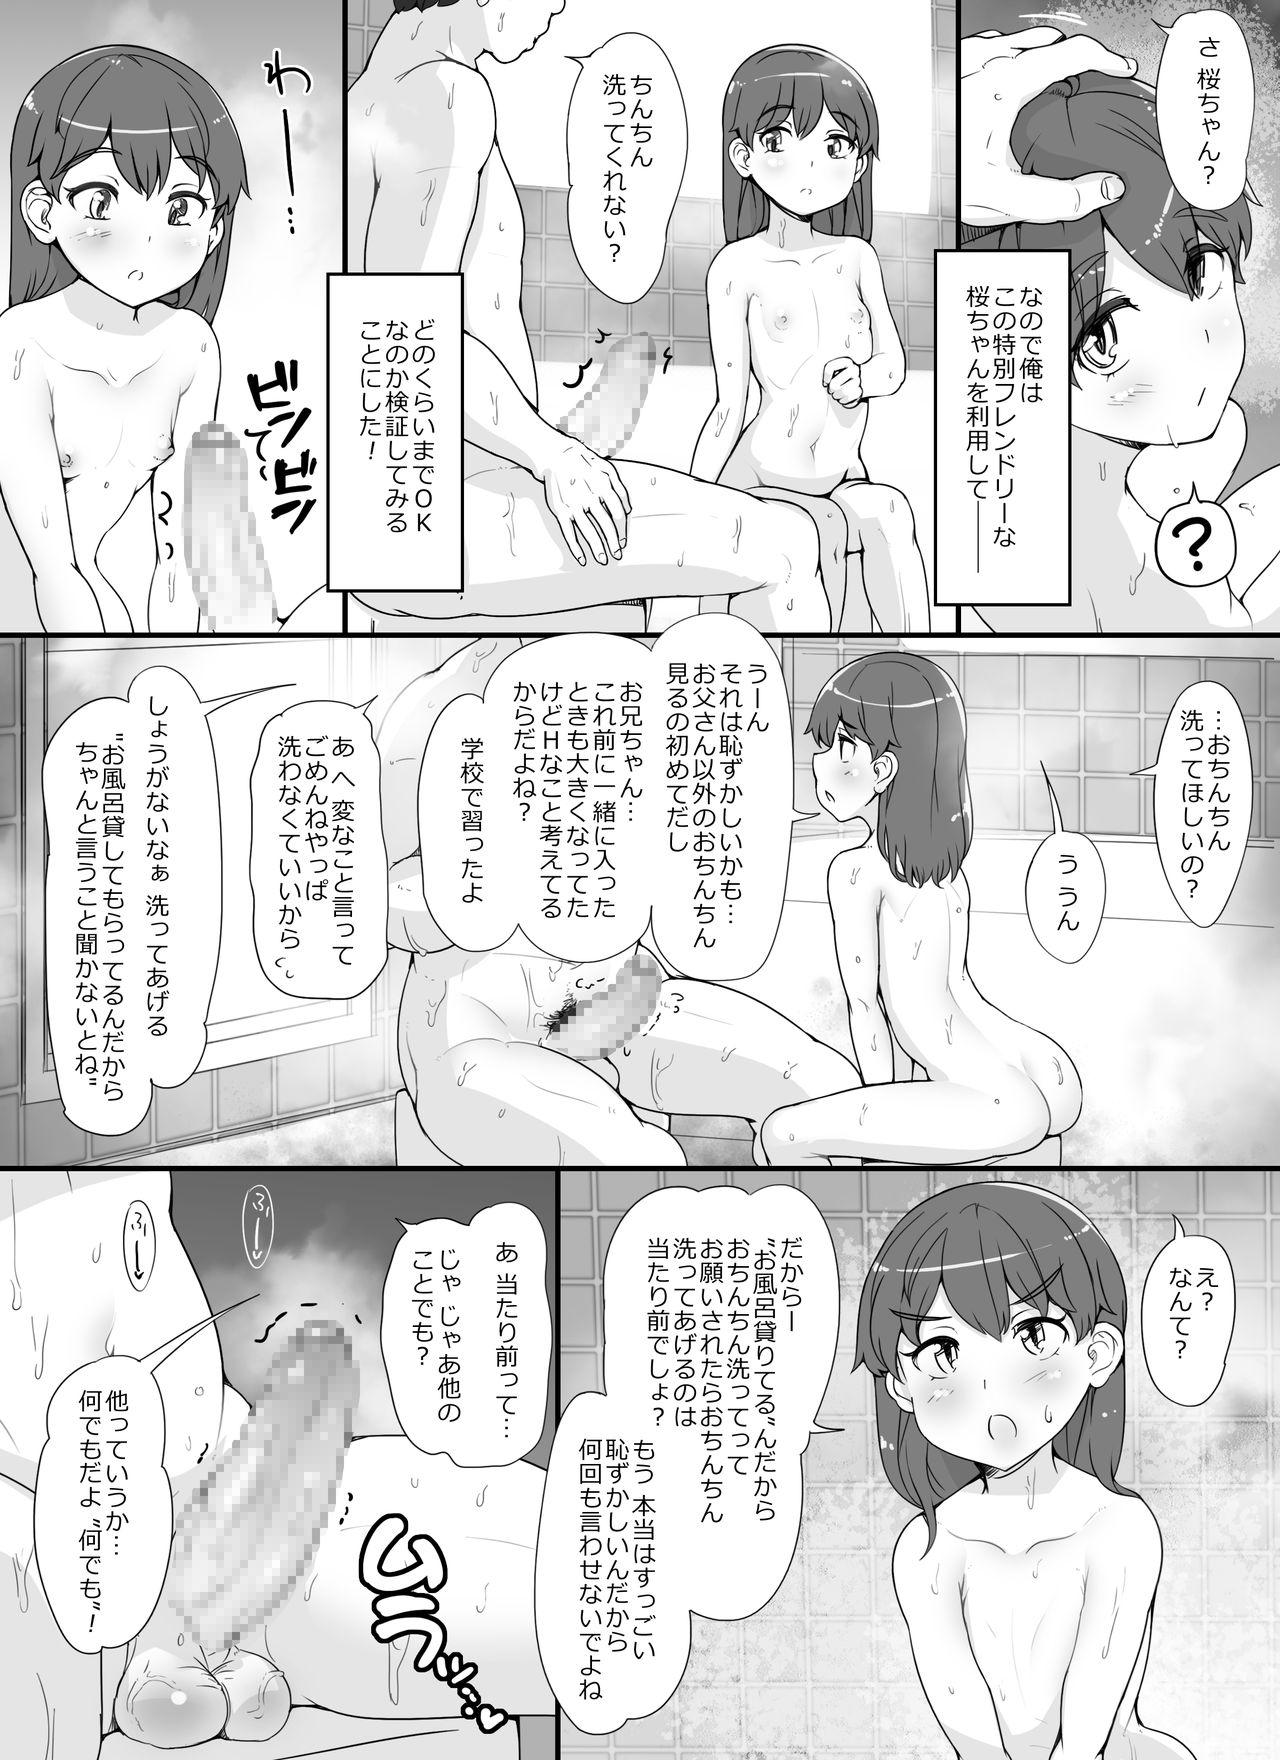 Young Kinjo no on'natachi ga nazeka ore no ie no furo ni hairi ni kuru kudan - Original Storyline - Page 7